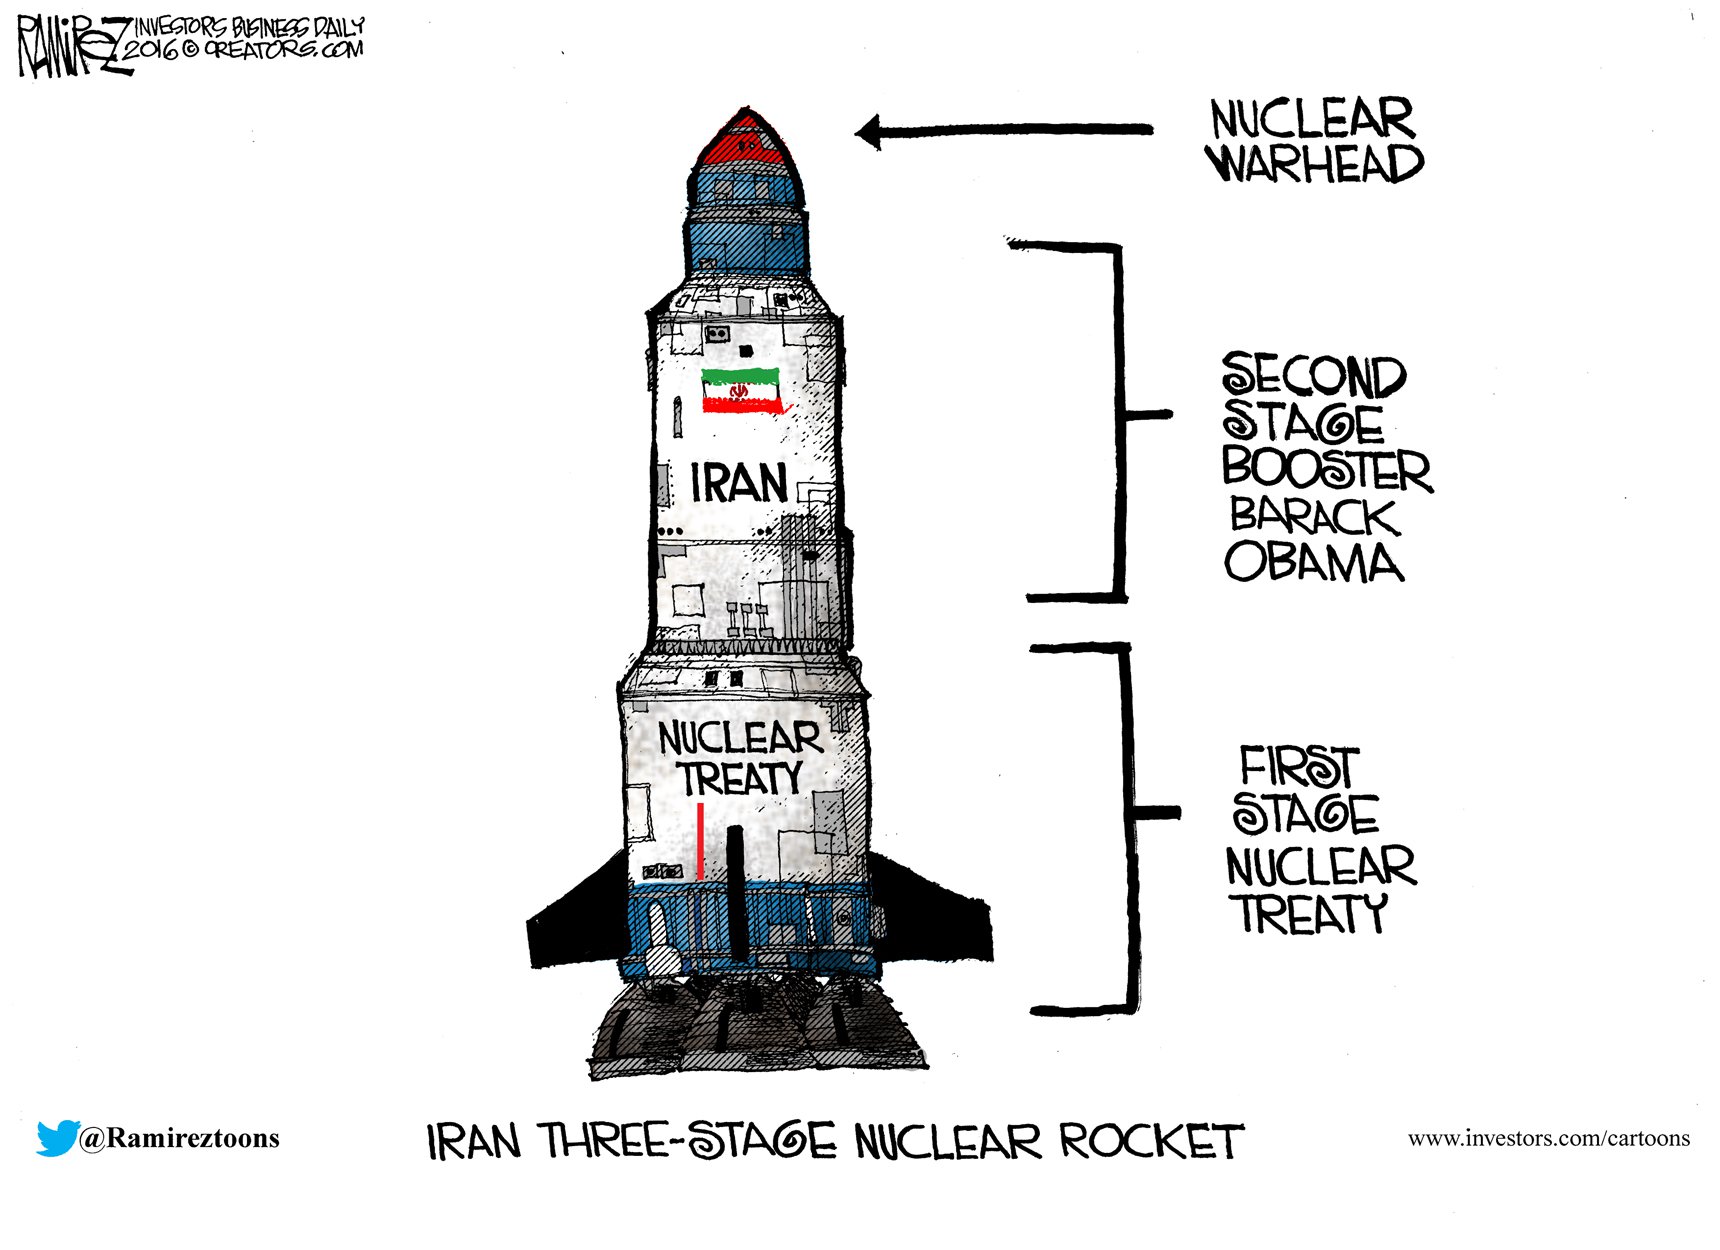 Iran Three-Stage Nuclear Rocket